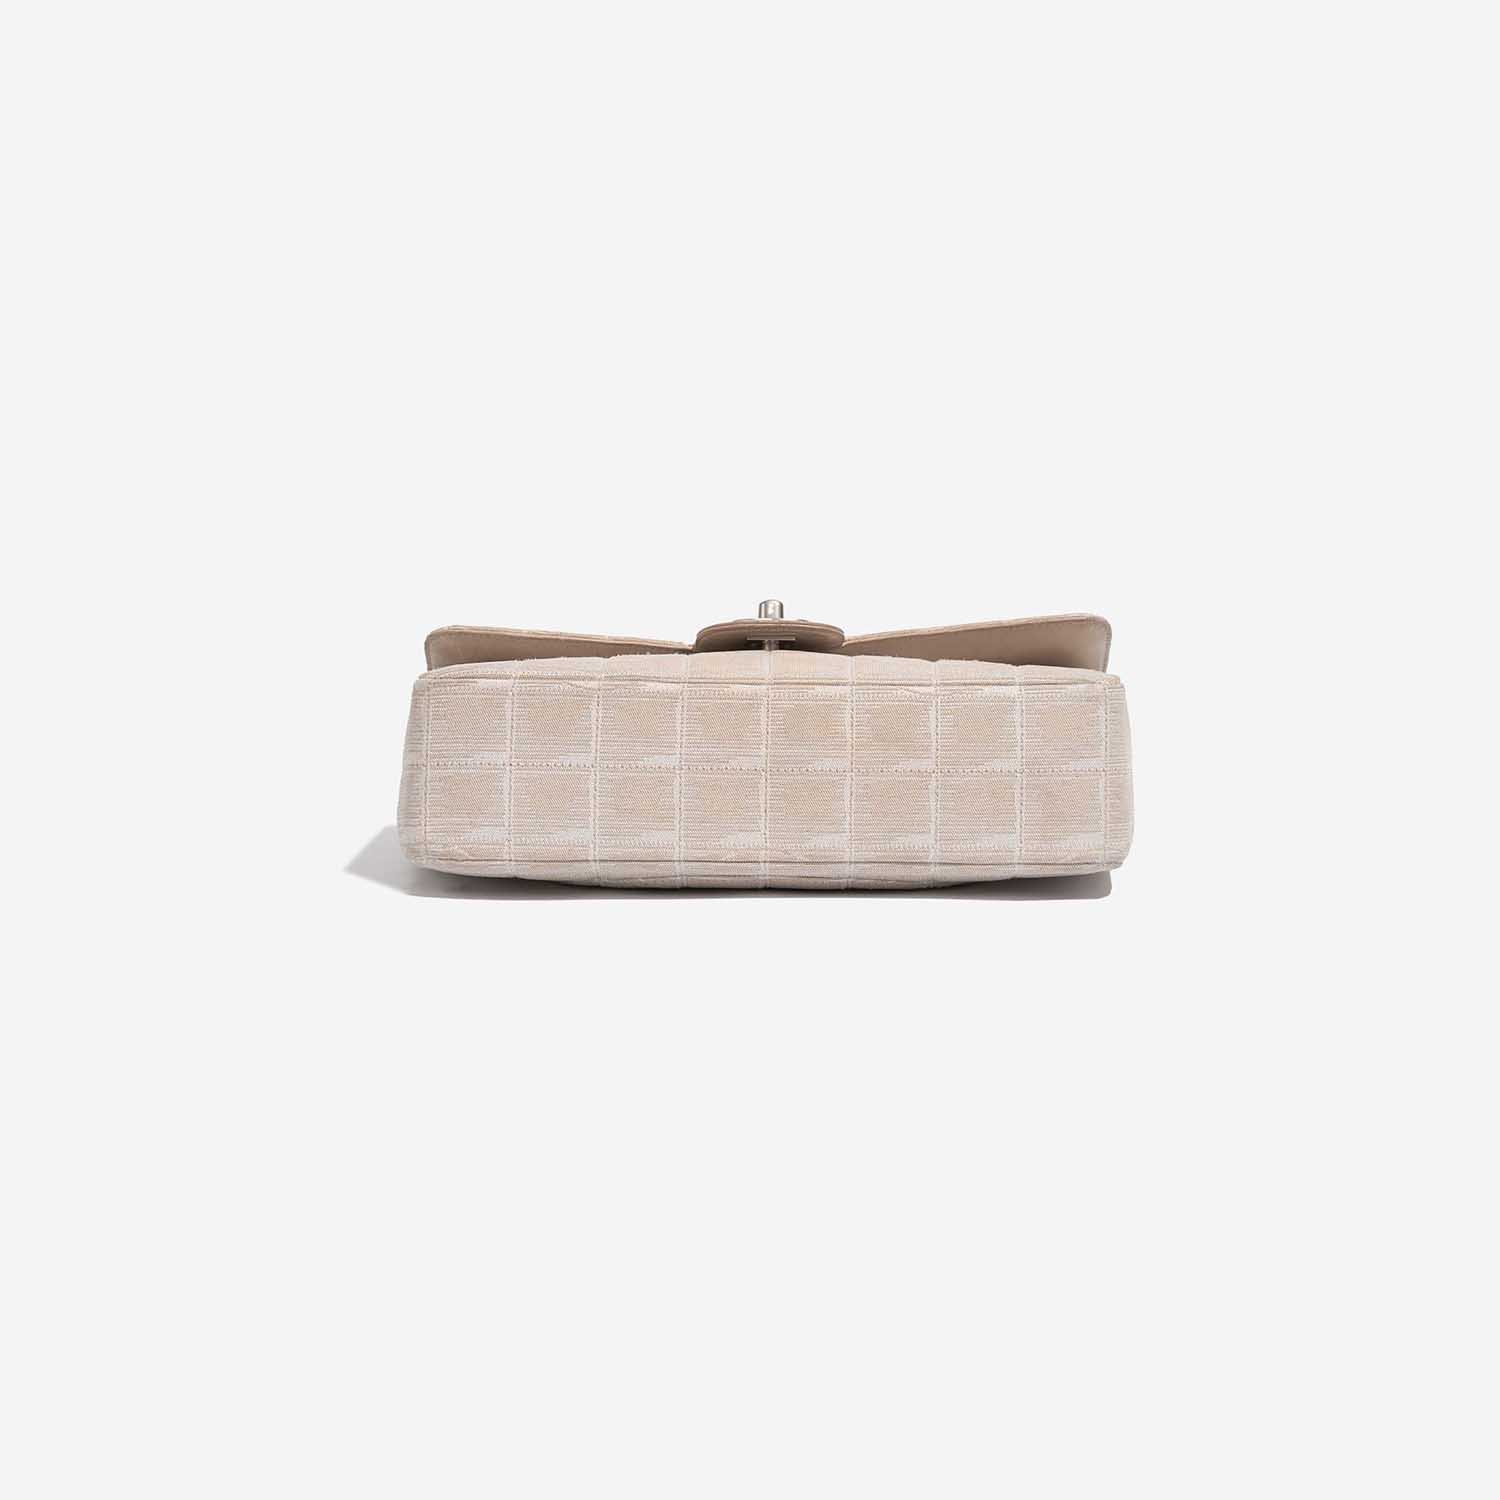 Chanel Timeless Medium Beige Bottom | Verkaufen Sie Ihre Designer-Tasche auf Saclab.com